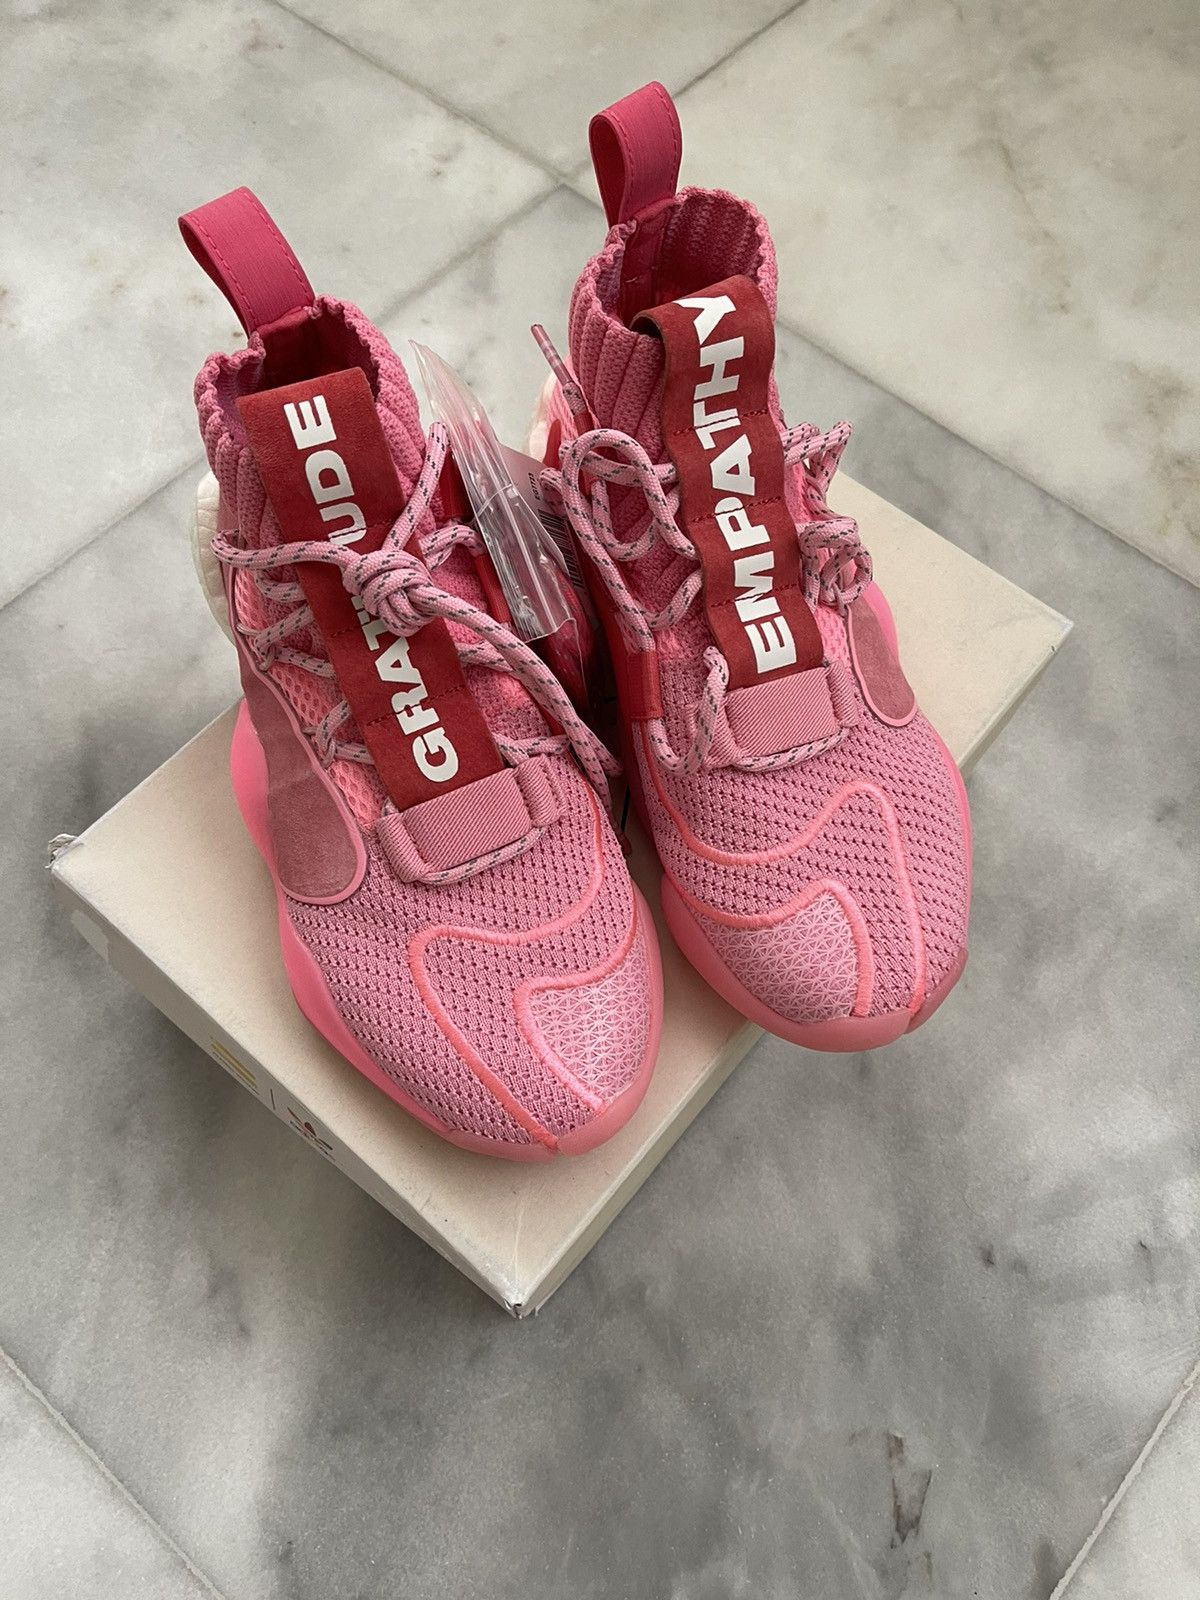 Adidas Pharrell x Crazy BYW X Hyper Pink 2019 Size US 6.5 / EU 39-40 - 4 Thumbnail